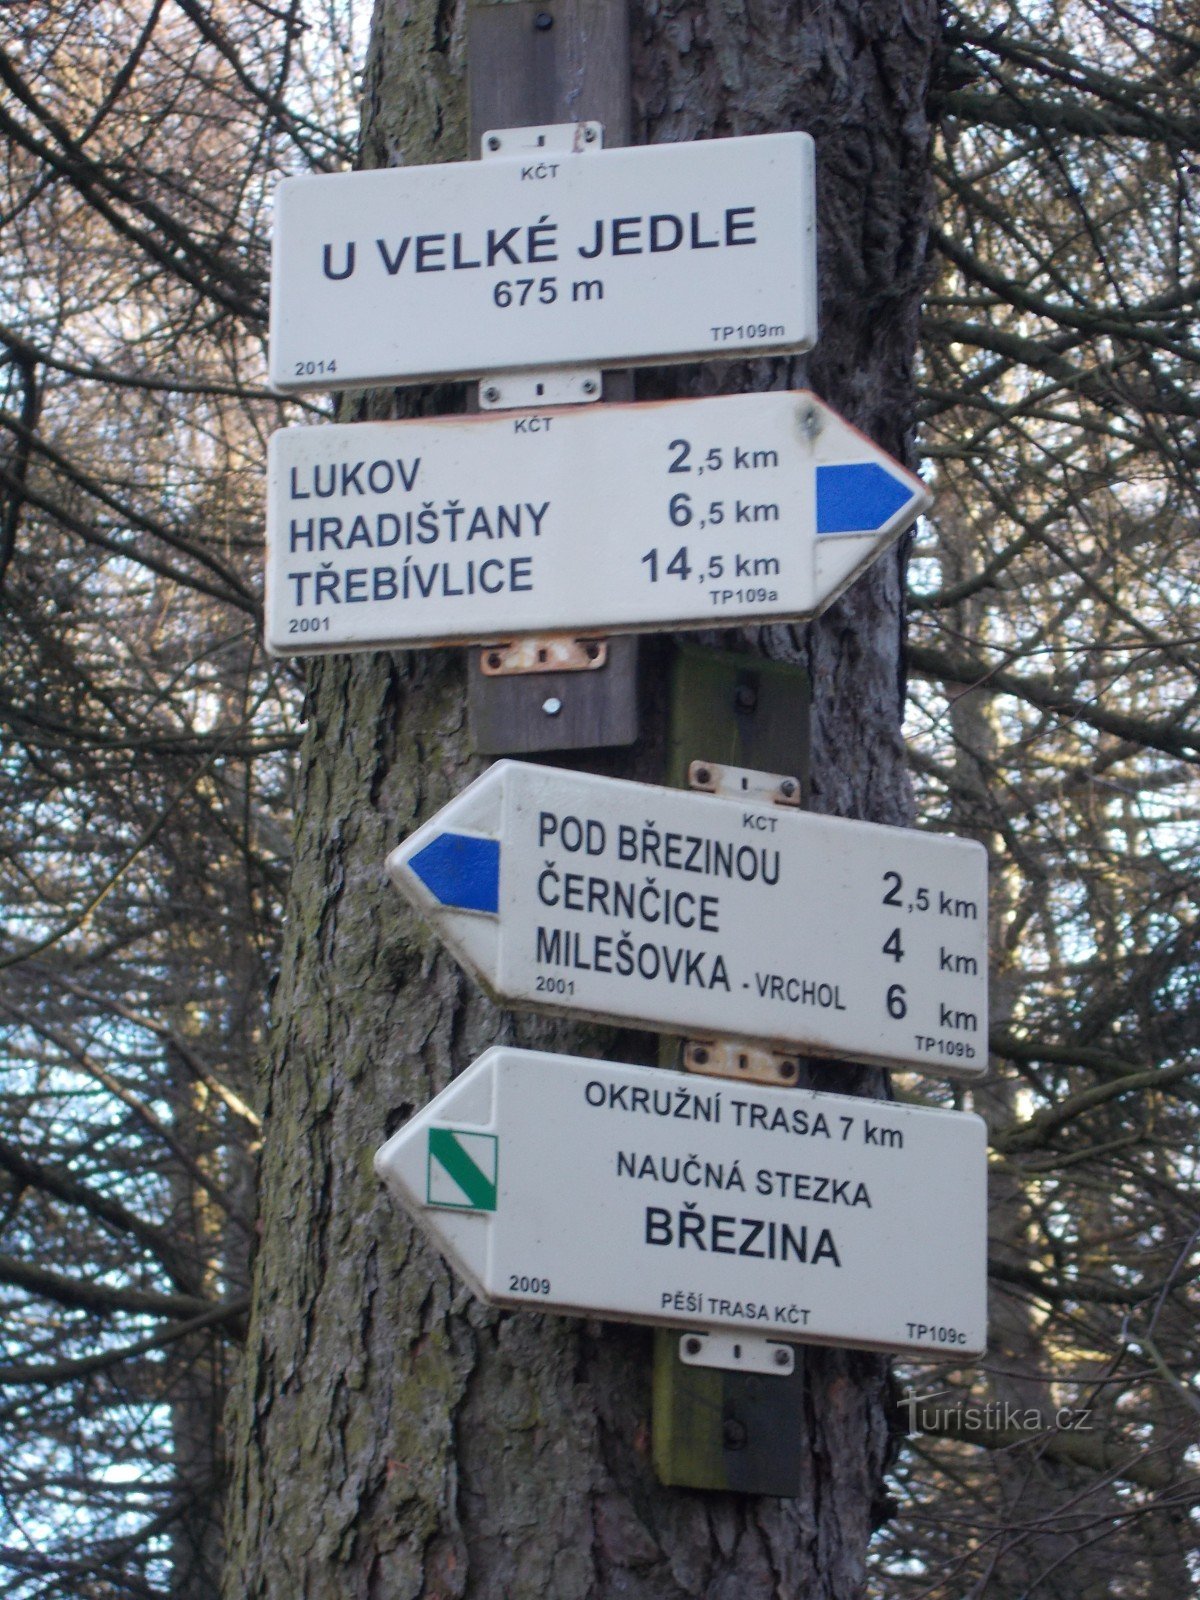 Placa de sinalização perto de Velká Jedle.